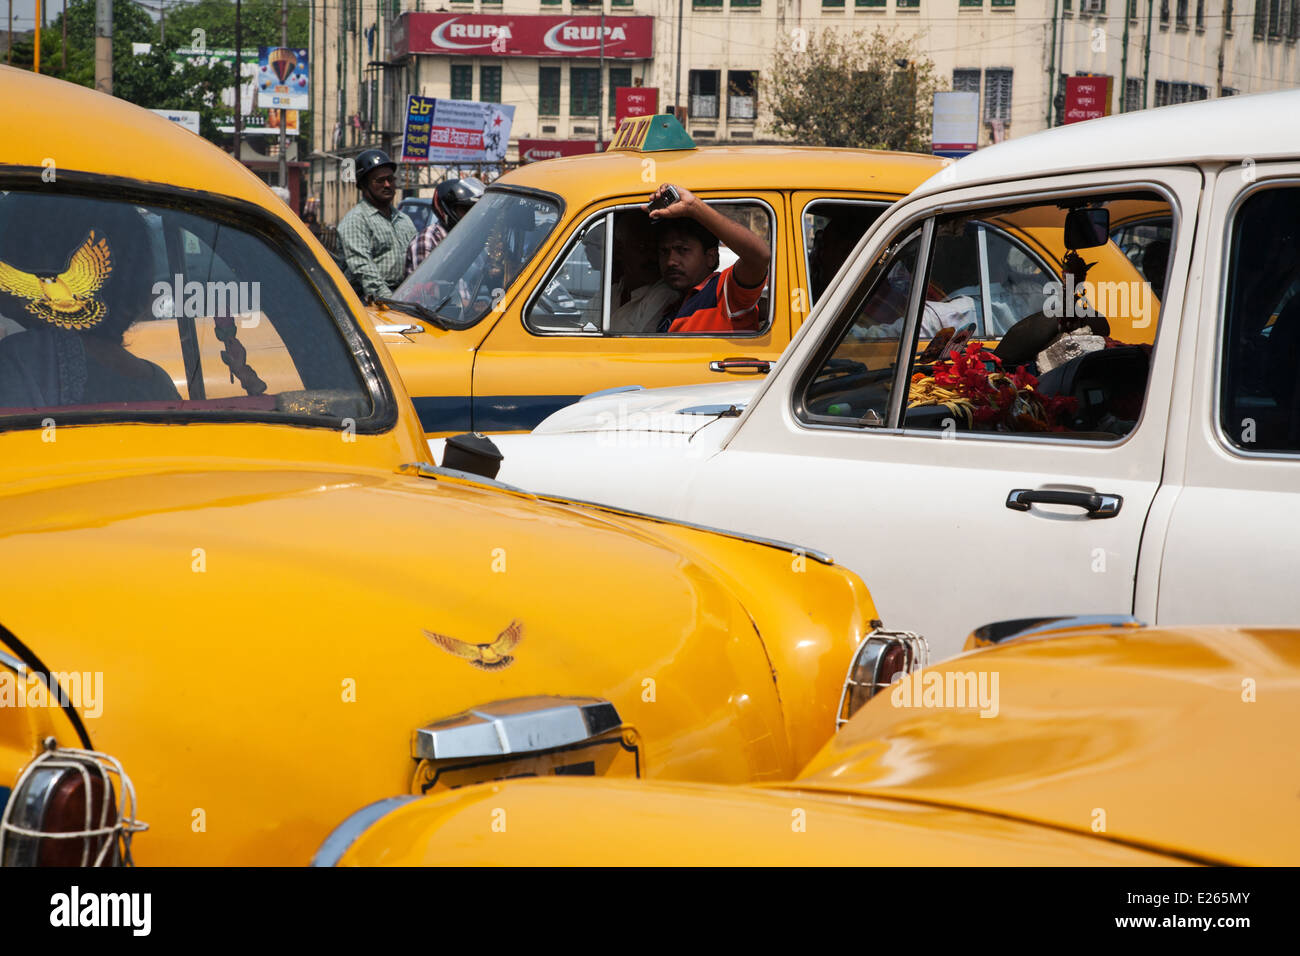 Un embouteillage avec yellow taxi Ambassadeur péage dans le centre de Kolkata, Inde. Banque D'Images